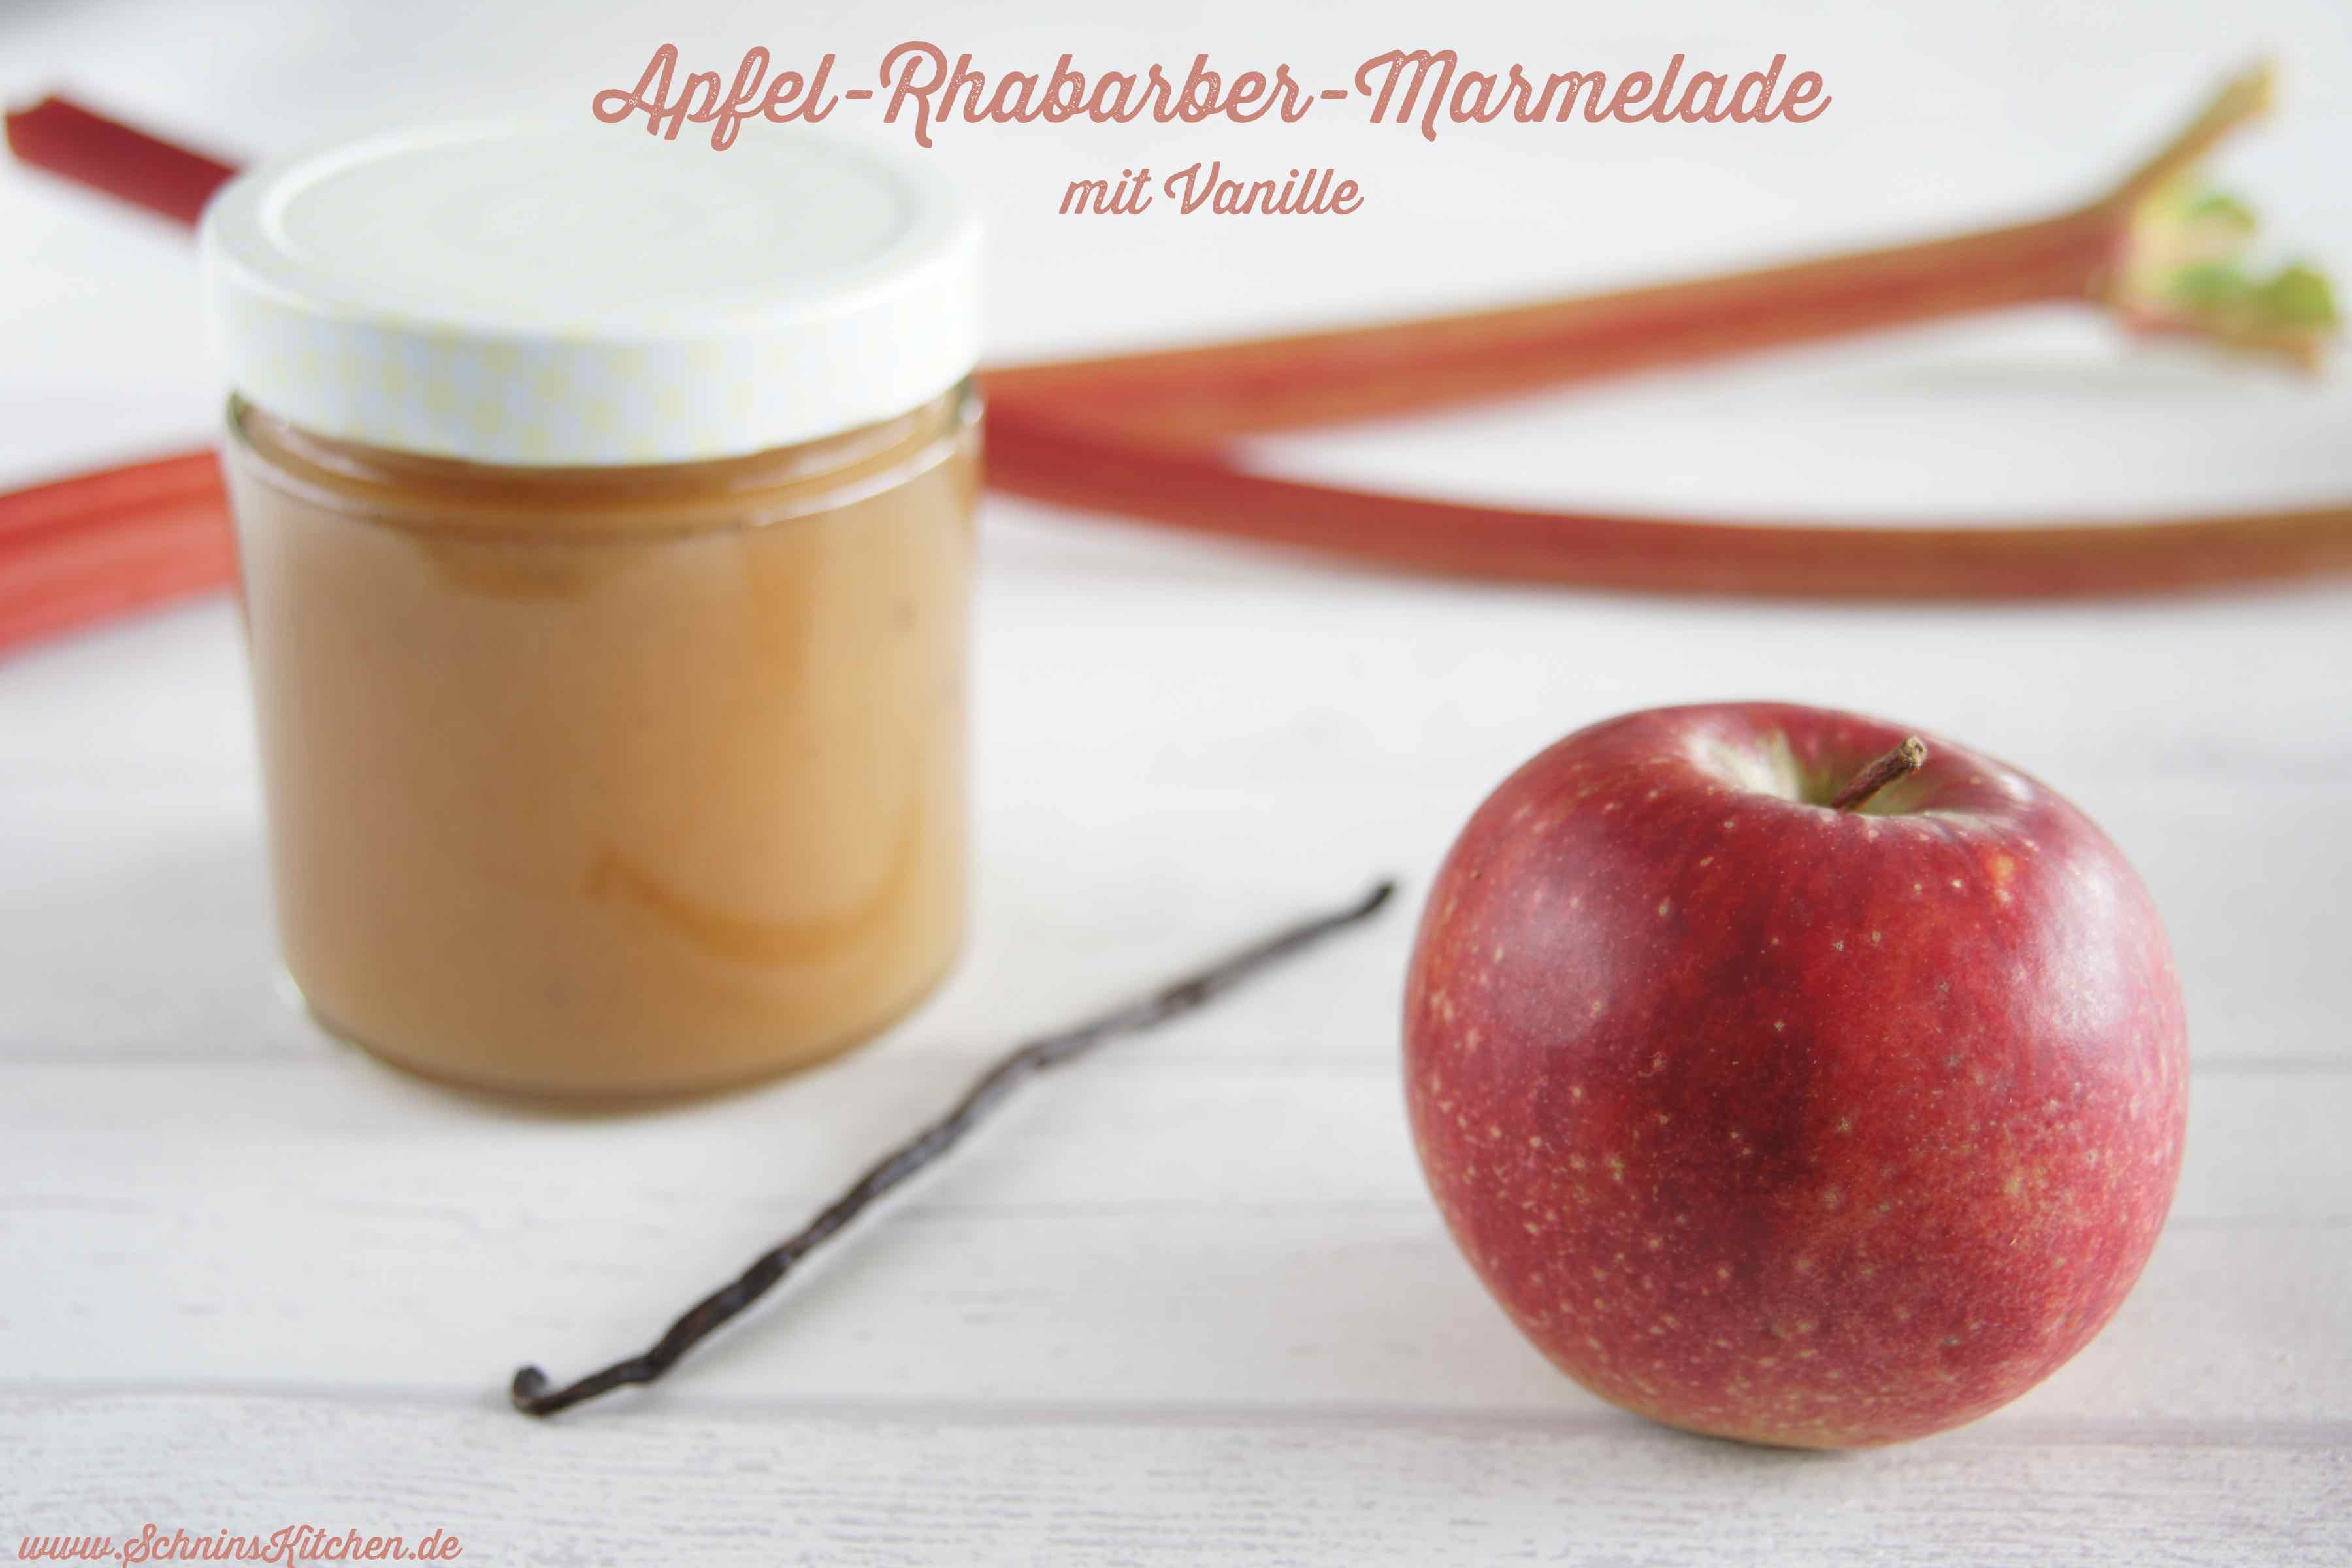 Schnin's Kitchen: Apfel-Rhabarber-Marmelade mit Vanille